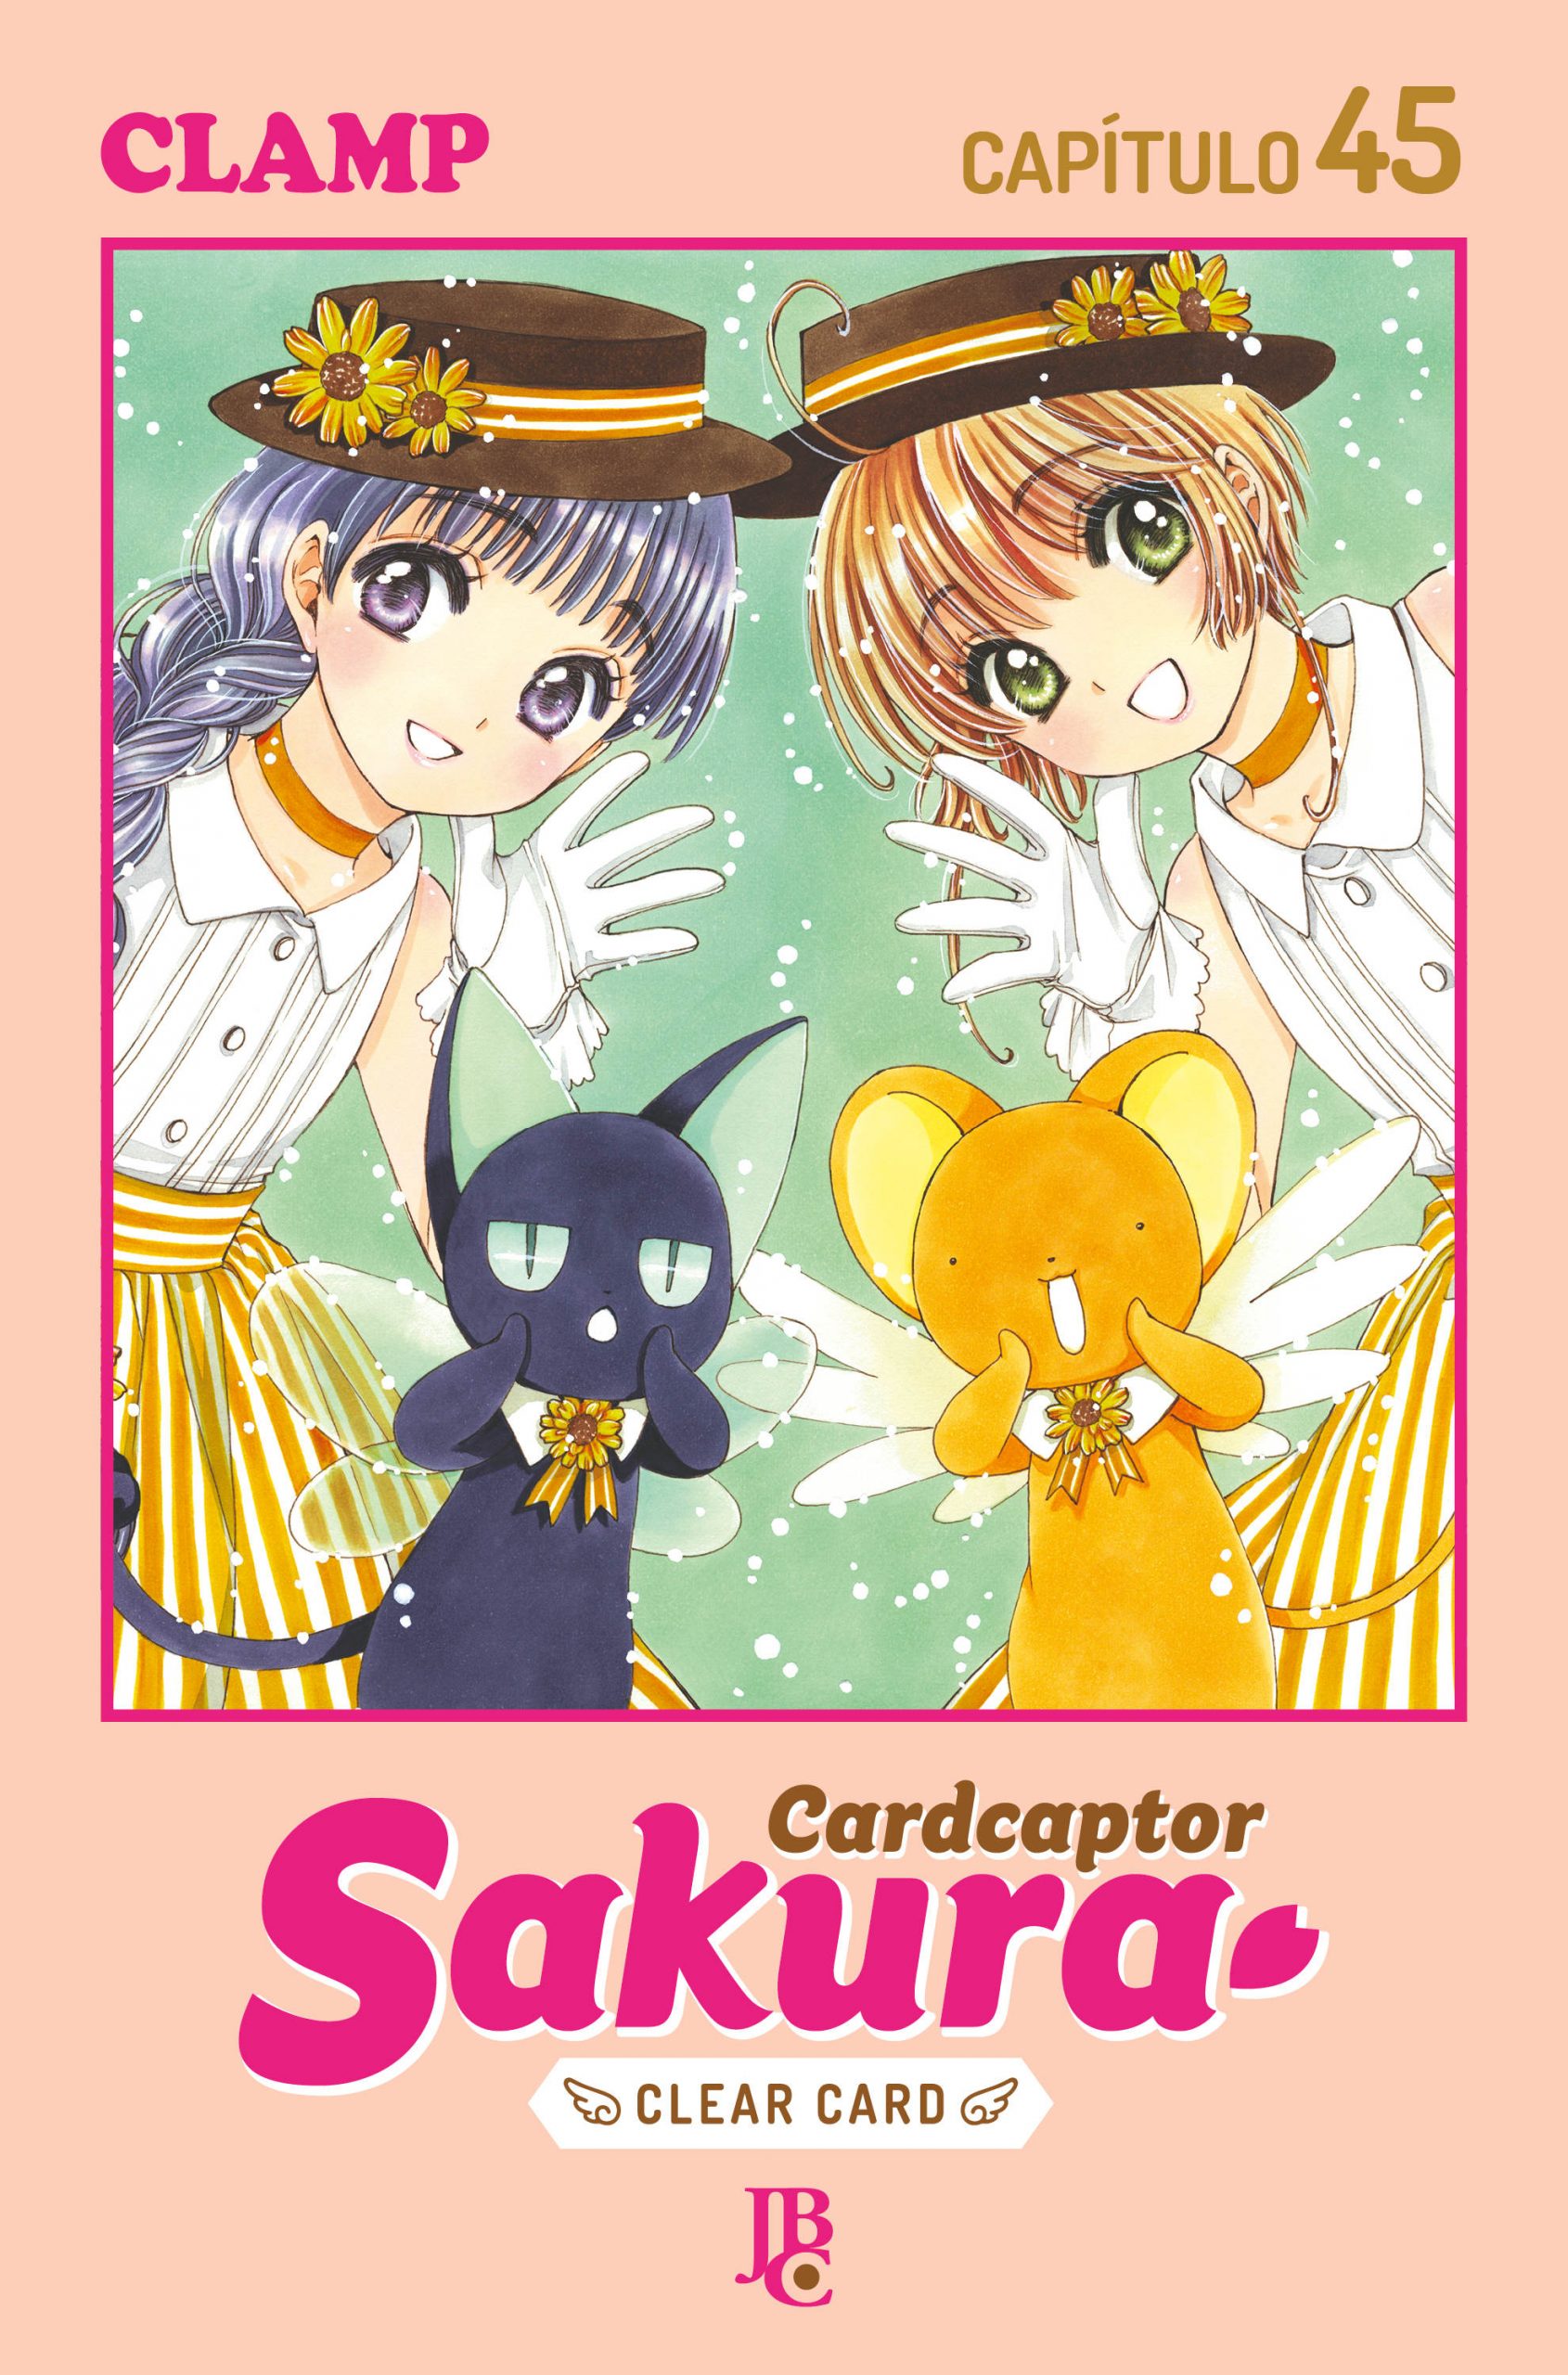 Cardcaptor Sakura será exibida no Brasil pelo canal Loading